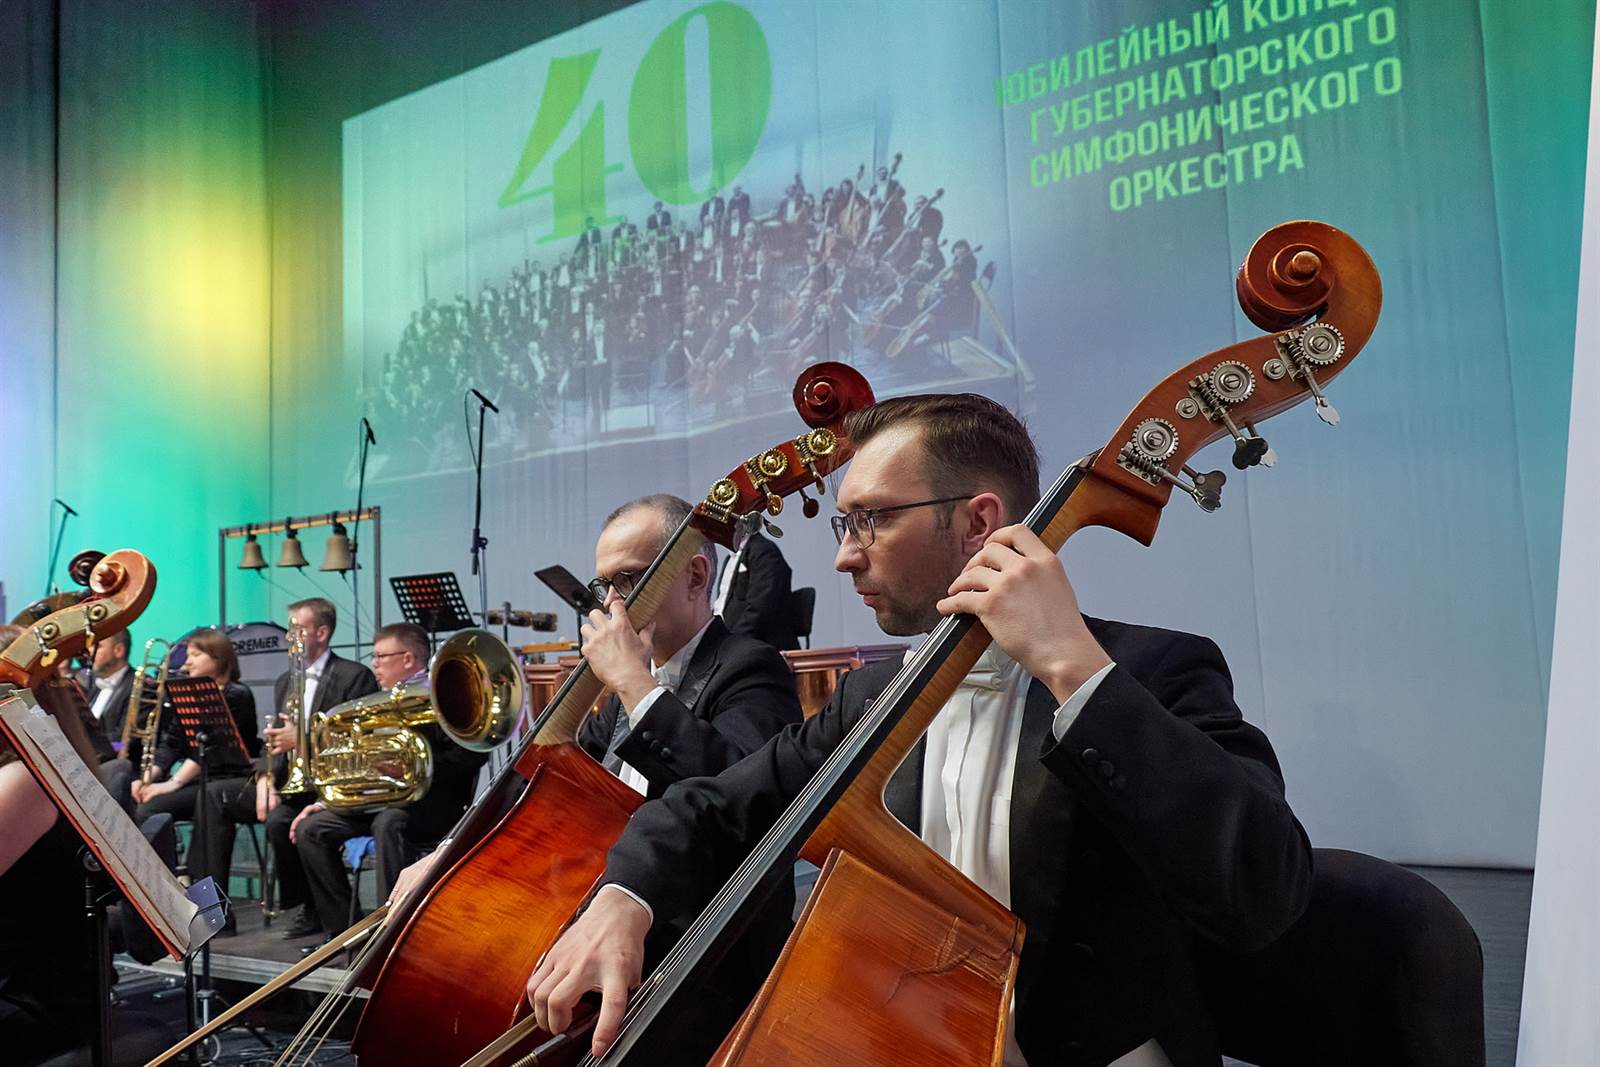 «40! Юбилейный концерт». Губернаторский симфонический оркестр, 07.04.2022